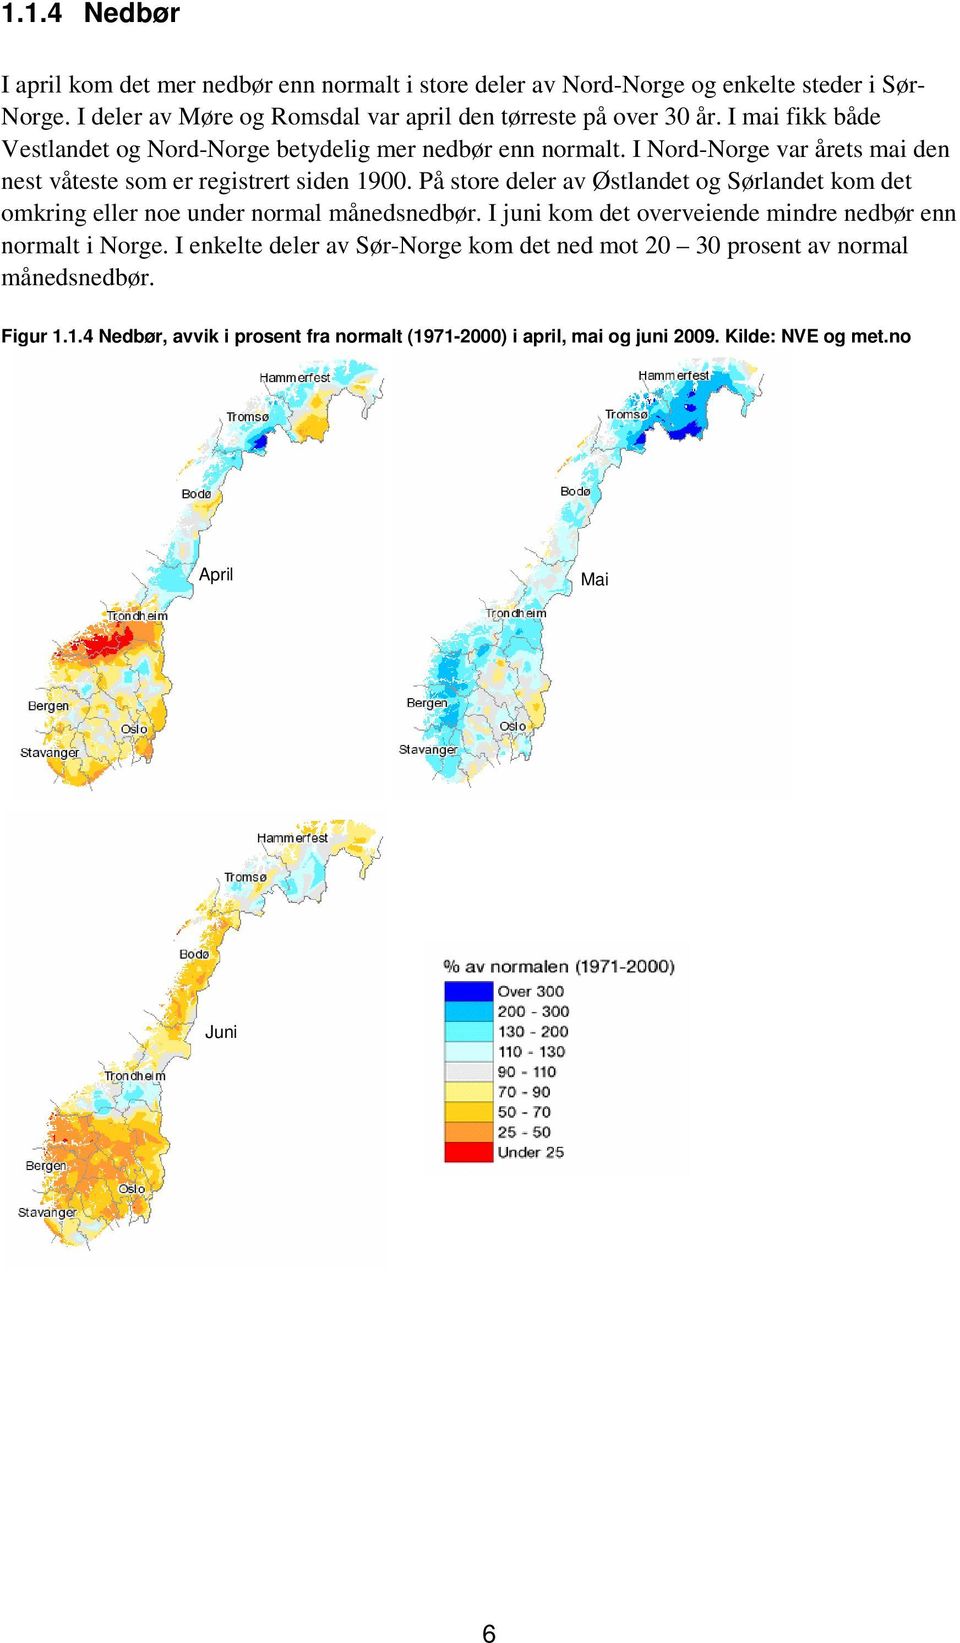 I Nord-Norge var årets mai den nest våteste som er registrert siden 19. På store deler av Østlandet og Sørlandet kom det omkring eller noe under normal månedsnedbør.